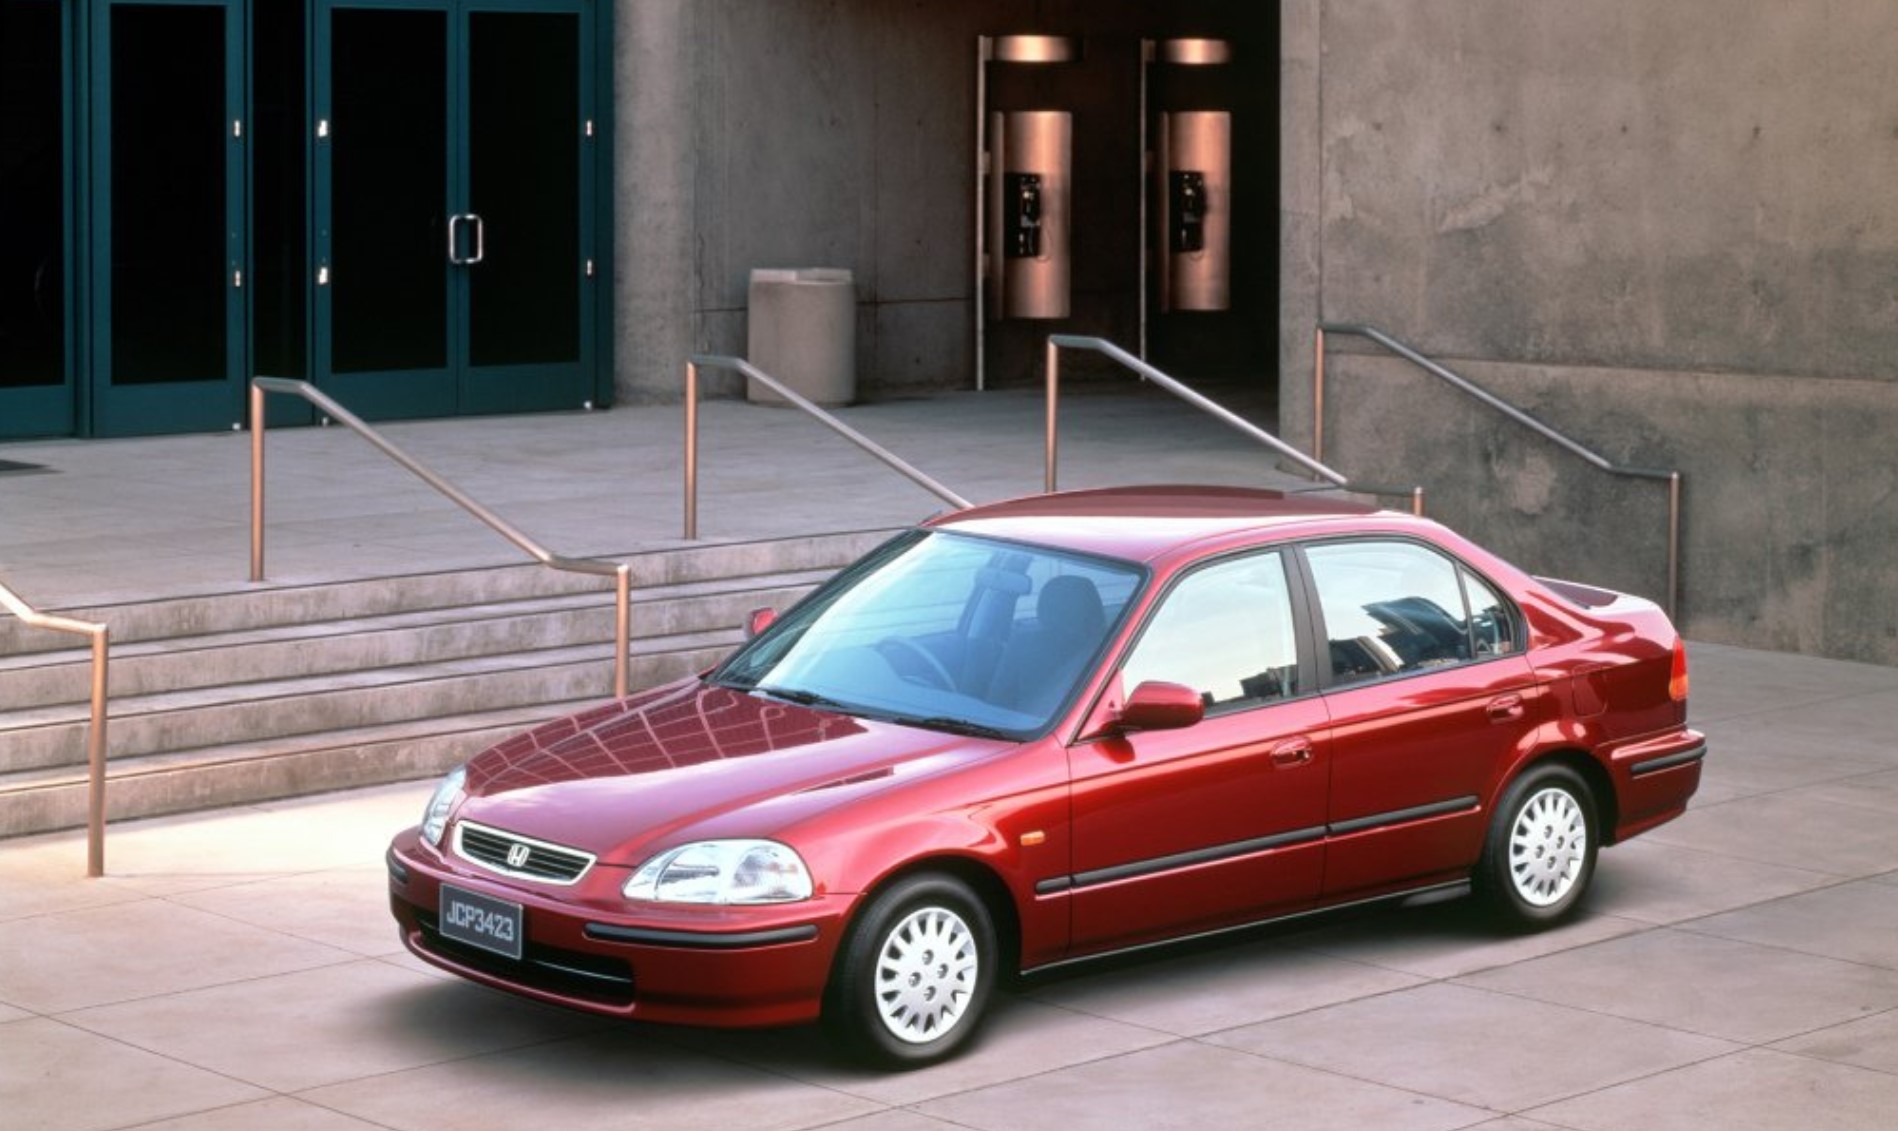 Ada Nissan X-Trail Tahun 2000-an, Berikut Mobil Mewah Dengan Harga Super Murah